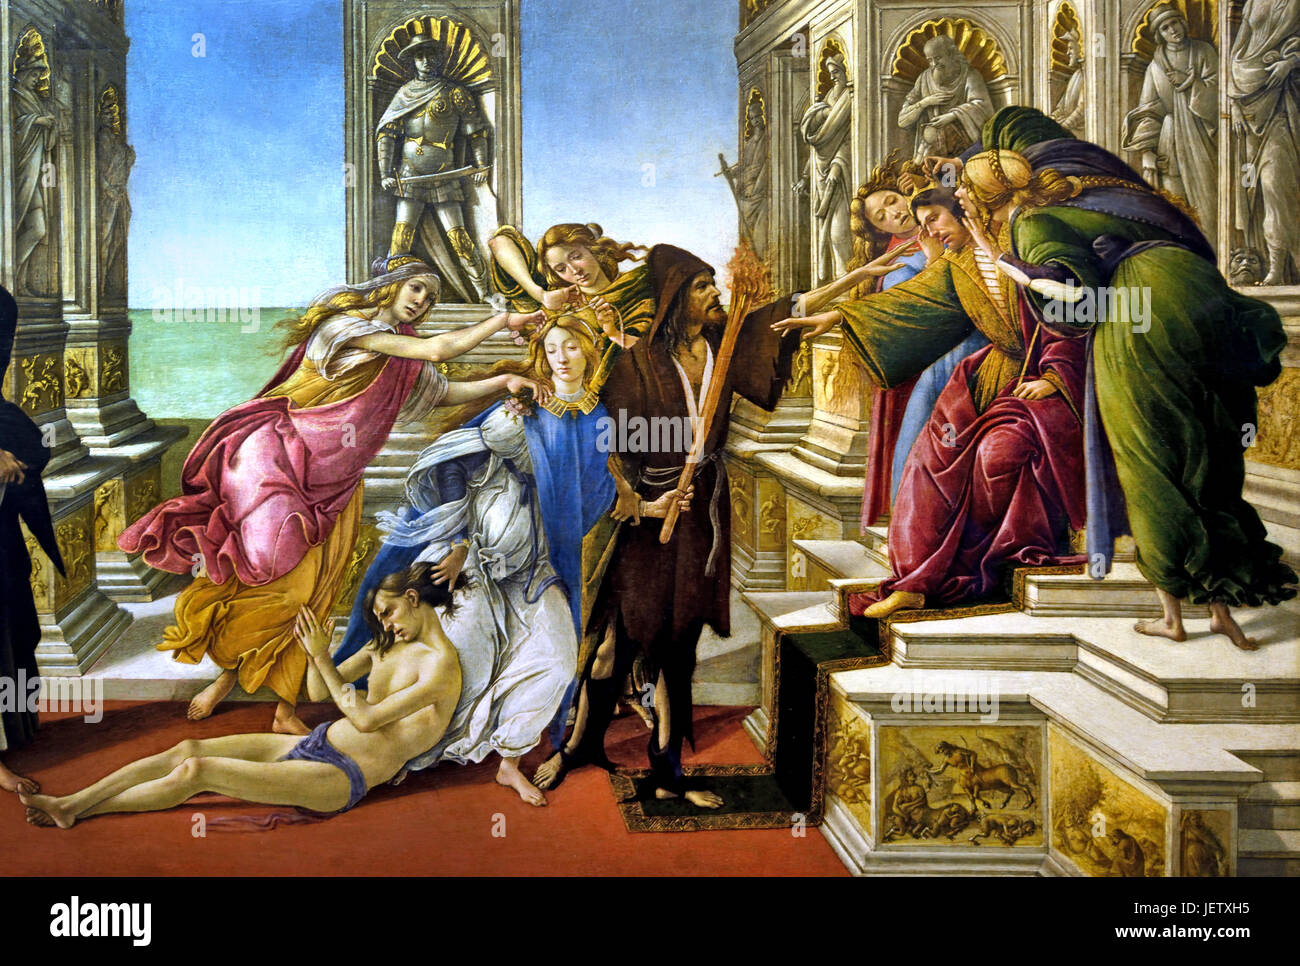 Verleumdung von Apelles 1495 Sandro Botticelli (Alessandro di Mariano Filipepi) 1445-1510 Florenz italienische Maler Florentiner Schule Frührenaissance. (Botticelli schuf dieses Gemälde auf die Beschreibung eines Gemäldes von Apelles, ein griechischer Maler aus der hellenistischen Zeit. Apelles) Stockfoto